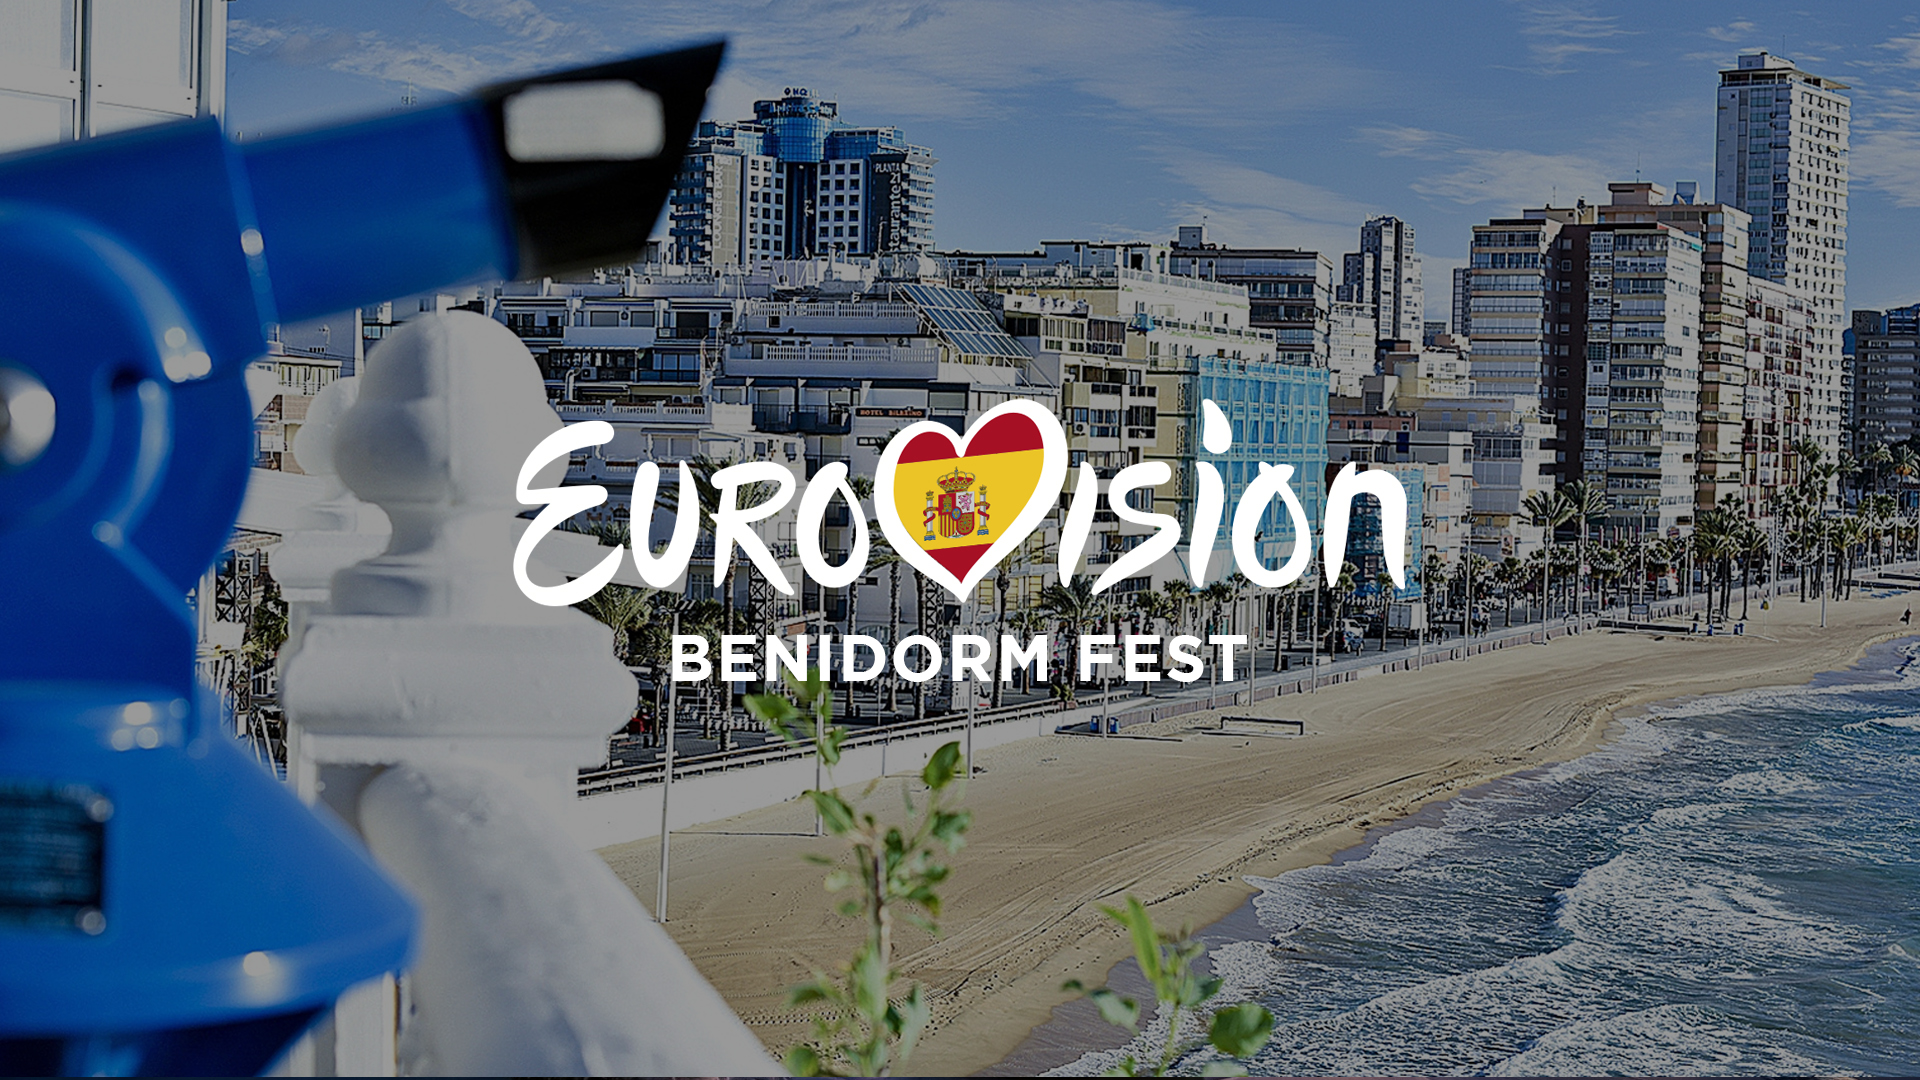 La productora Boomerang TV colaborará con RTVE en las galas del Benidorm Fest